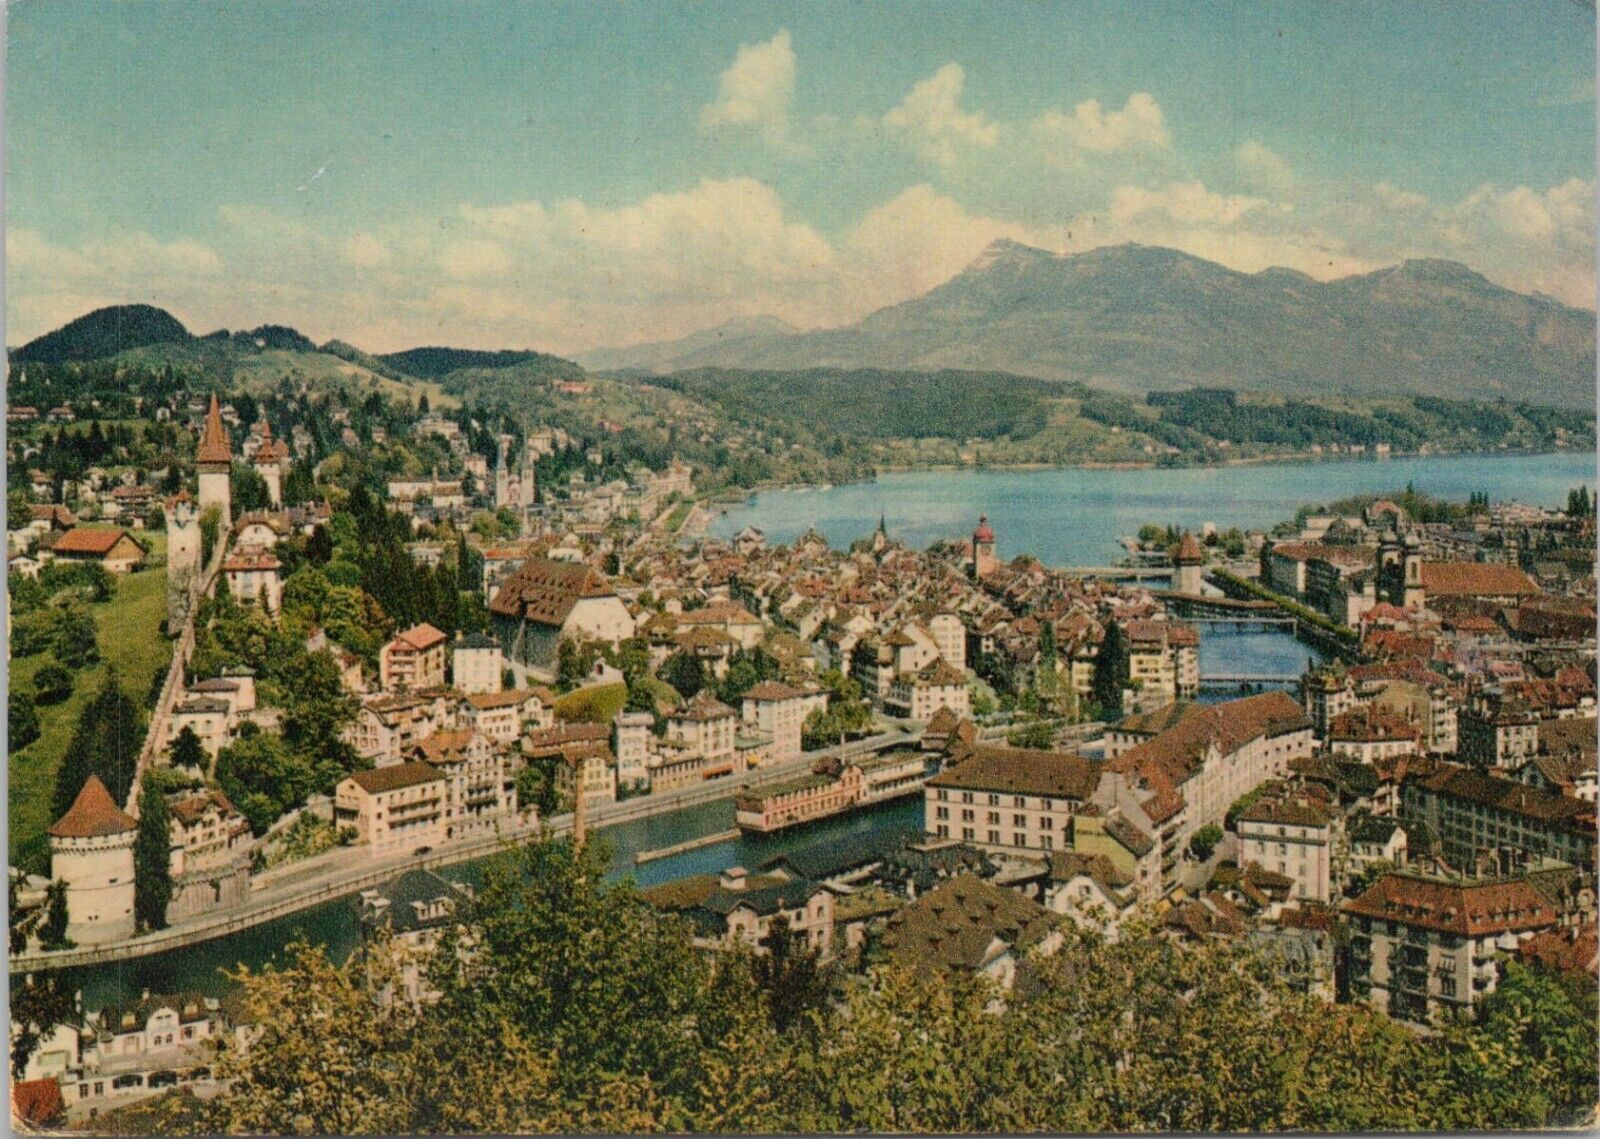 Photo PC ** Luzern Switzerland Panoramic Town View 1959